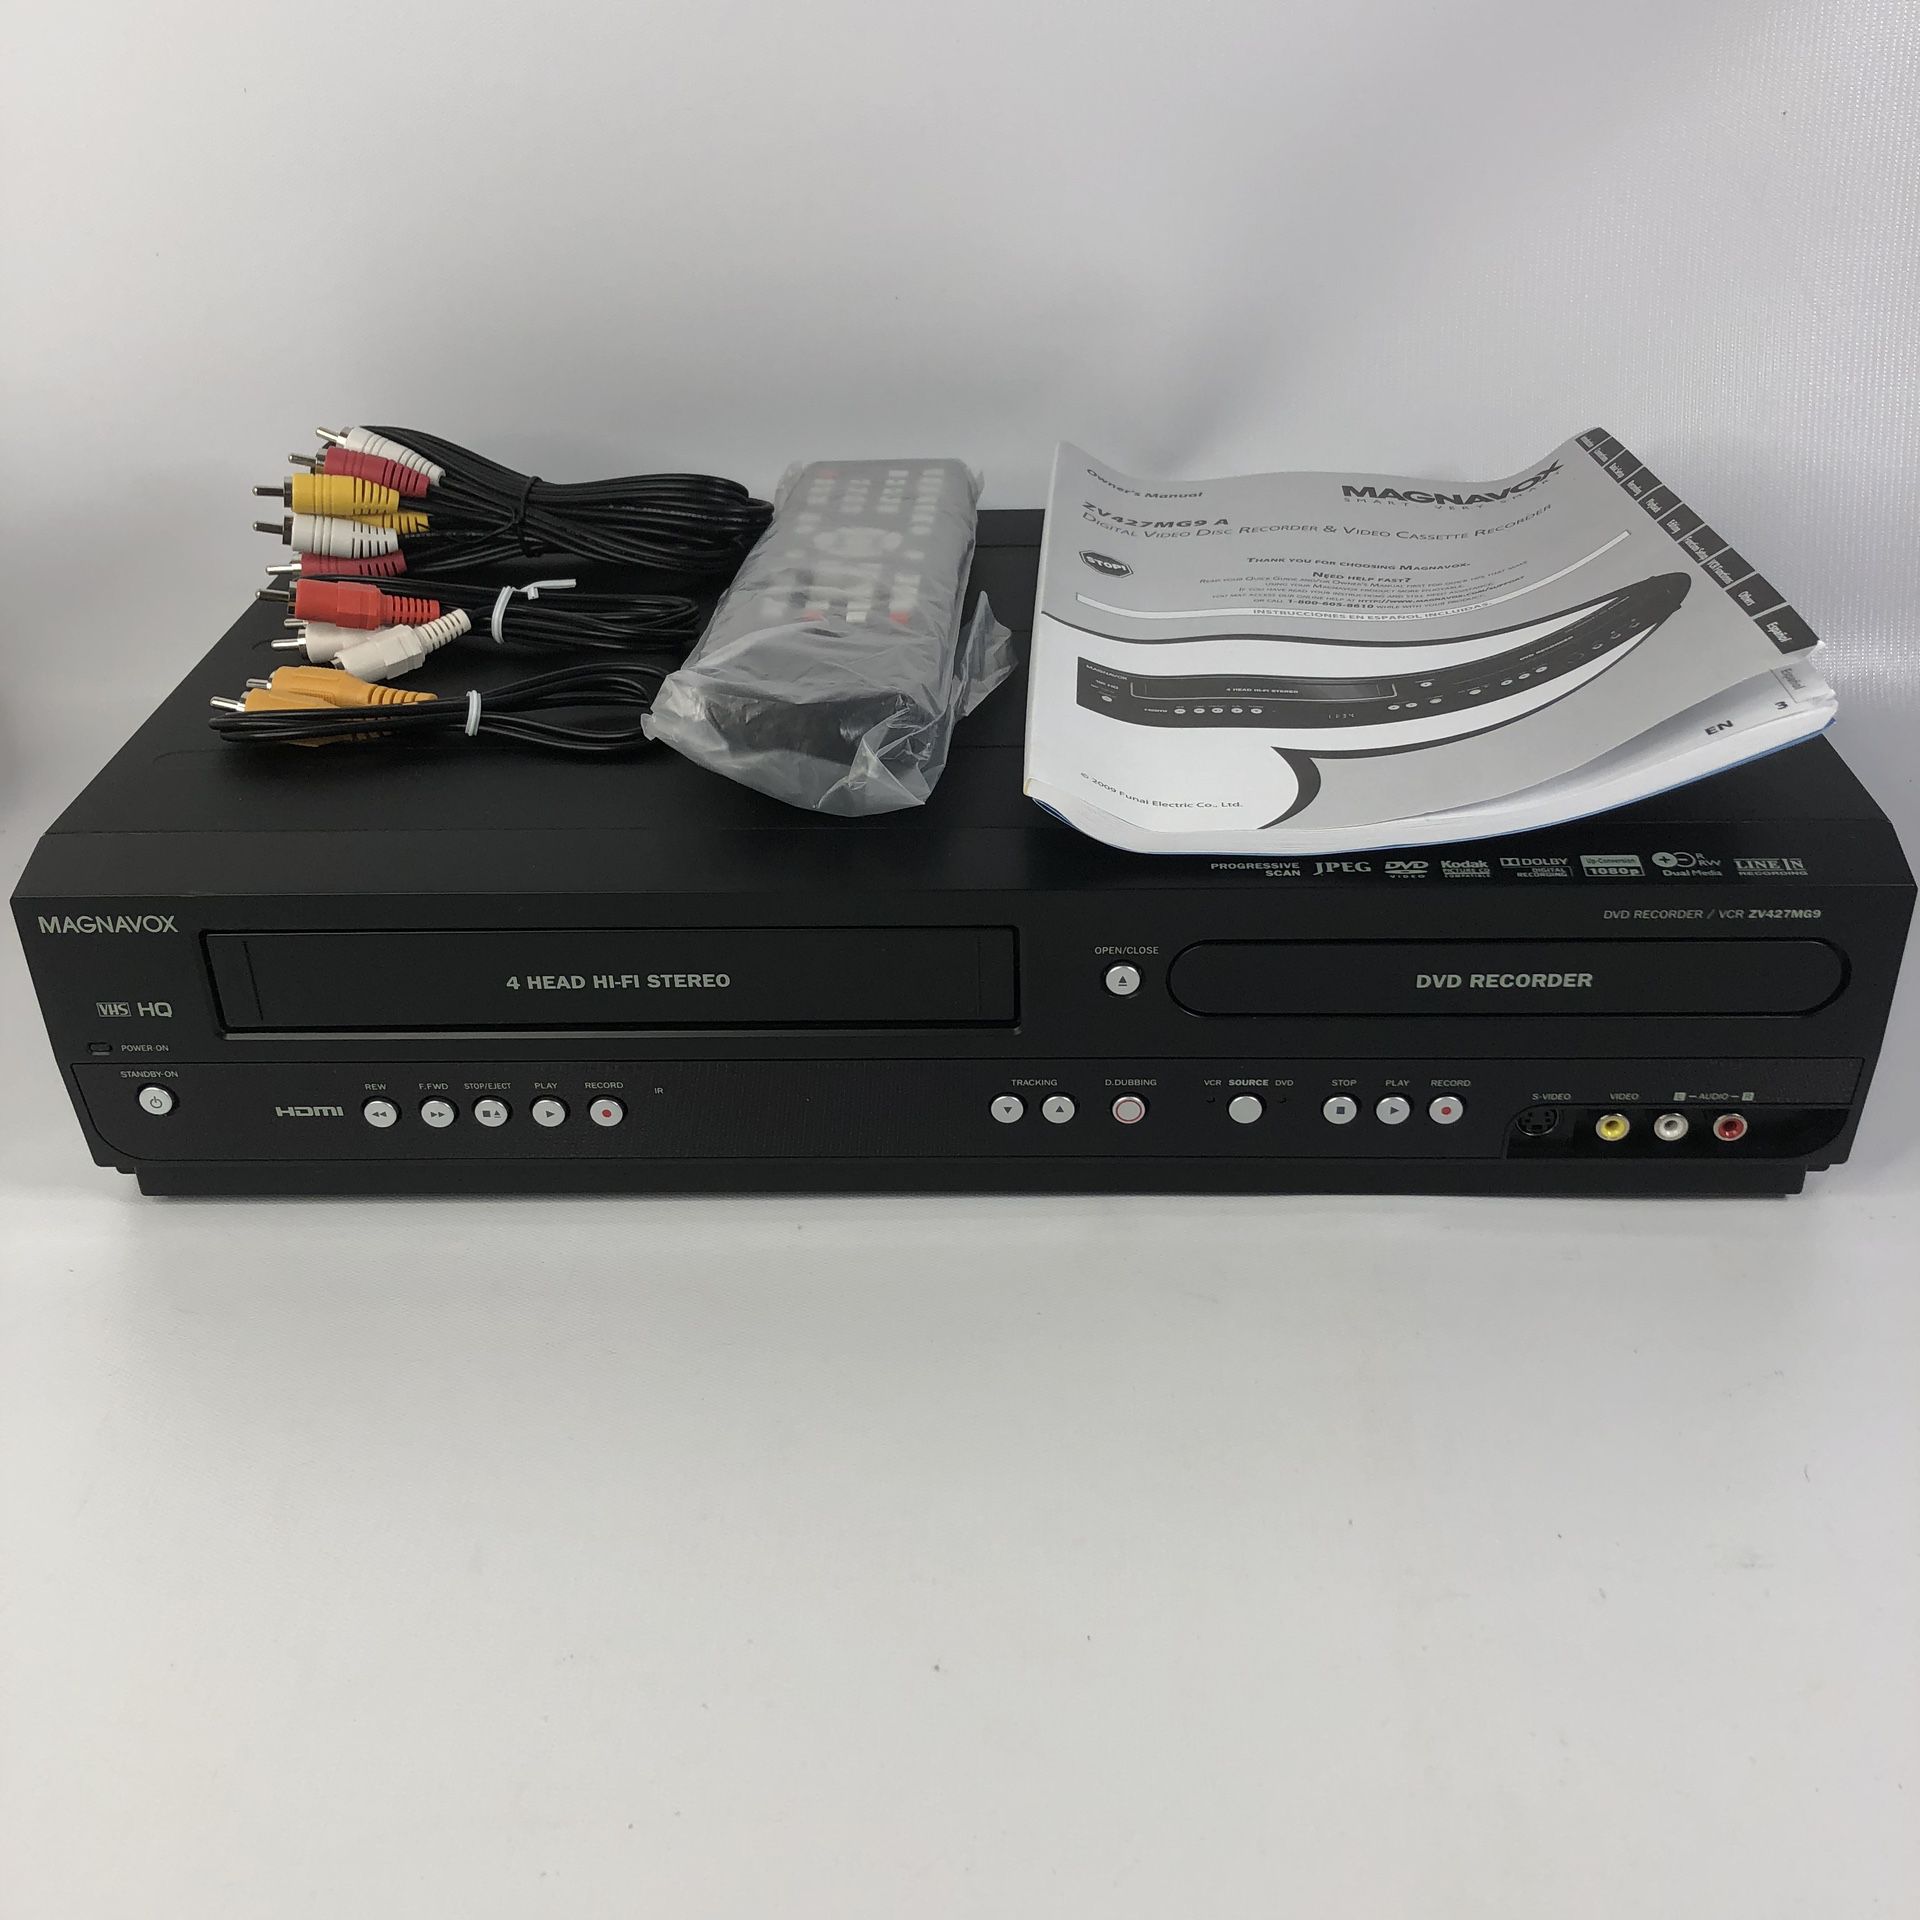 Magnavox ZV427MG9 VCR/DVD RECORDER Combo VHS Remote, Manual, & RCA Cable No Box